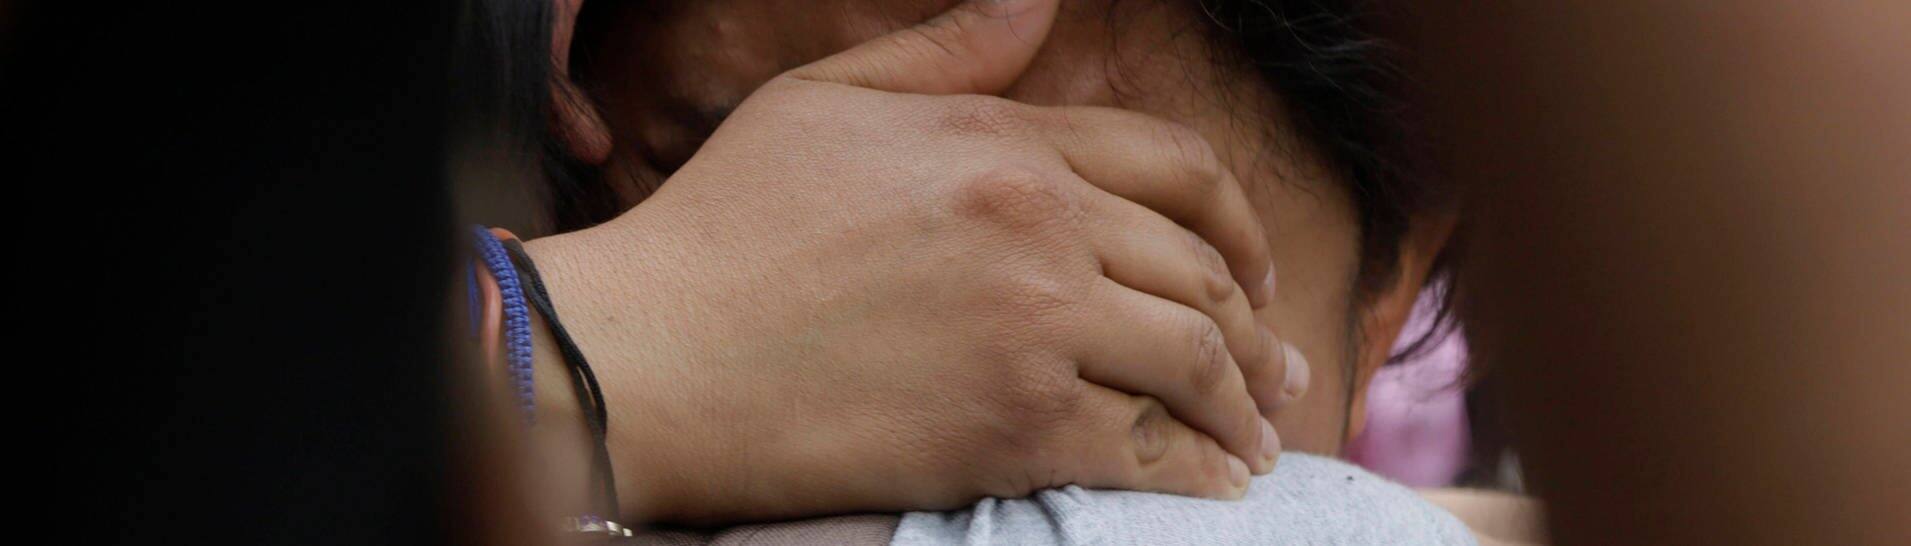 Vergewaltigungsopfer Roxana Ruiz nachdem sie zunächst zu mehr als sechs Haft verurteilt wurde. (Foto: IMAGO, IMAGO / NurPhoto)